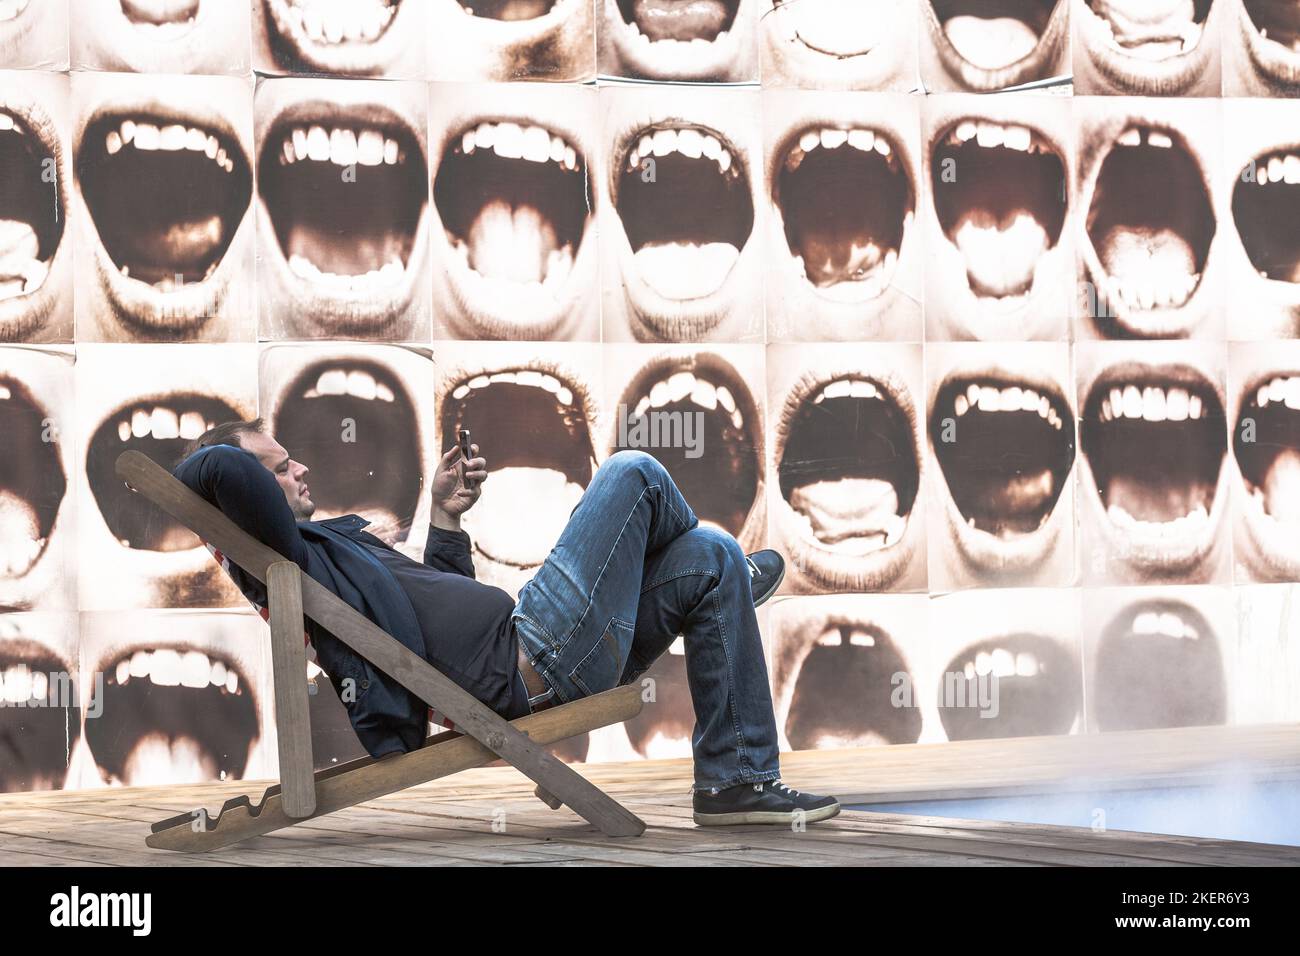 Homme allongé dans un transat, consultant son téléphone mobile, devant un mur illustré de larges bouches humaines ouvertes. Bruxelles. Banque D'Images